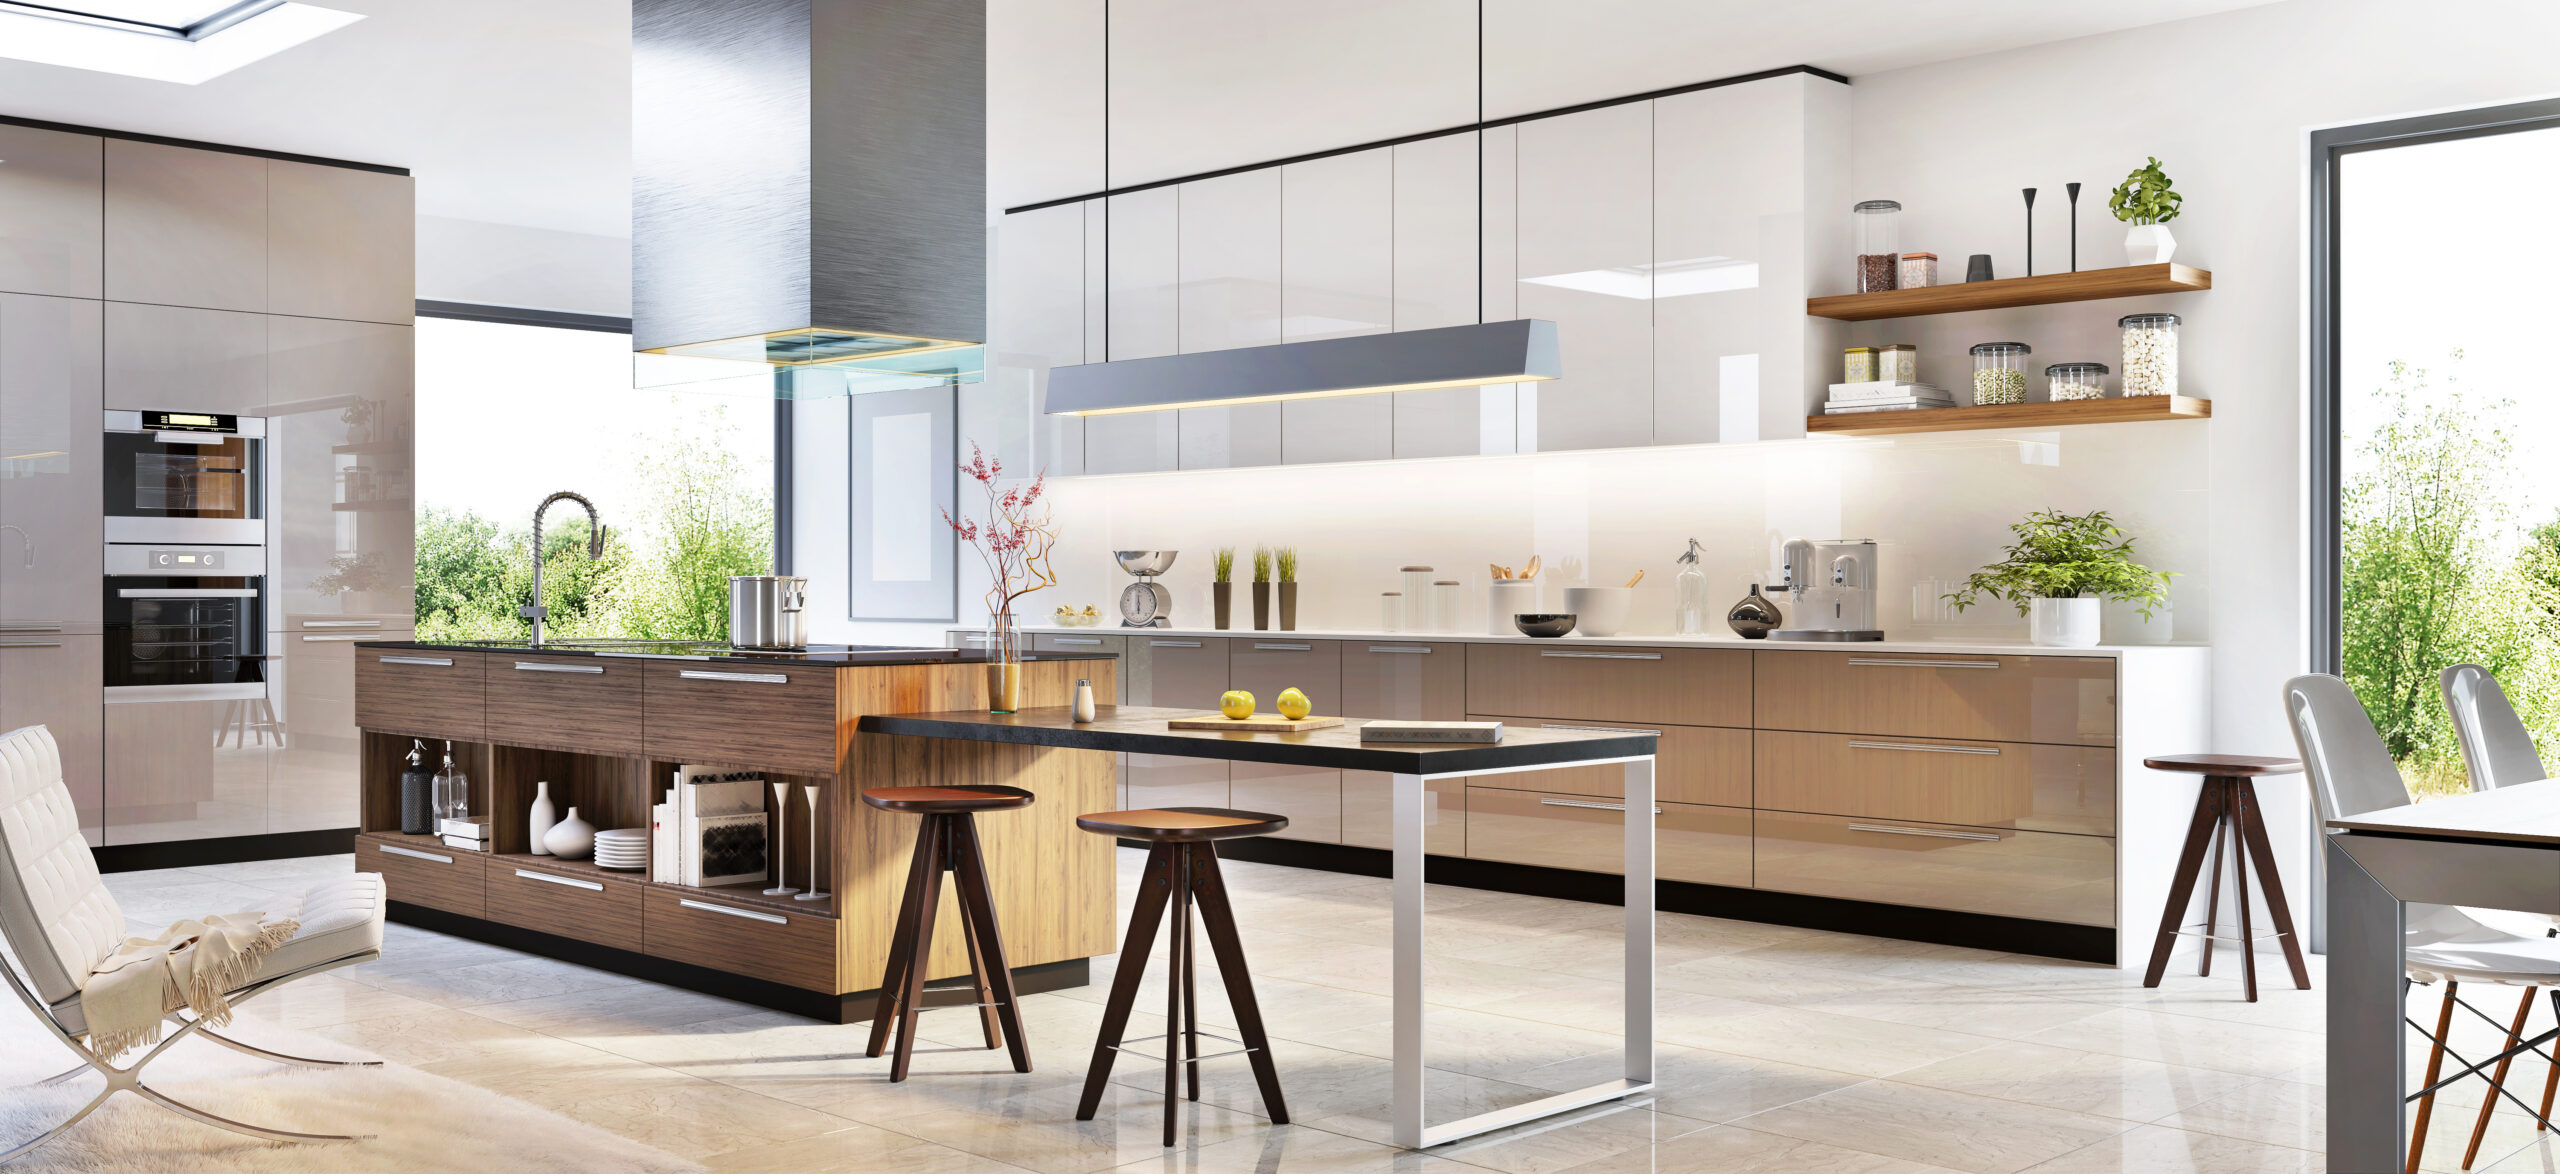 Modern kitchen interior design in a luxury home in Seattle